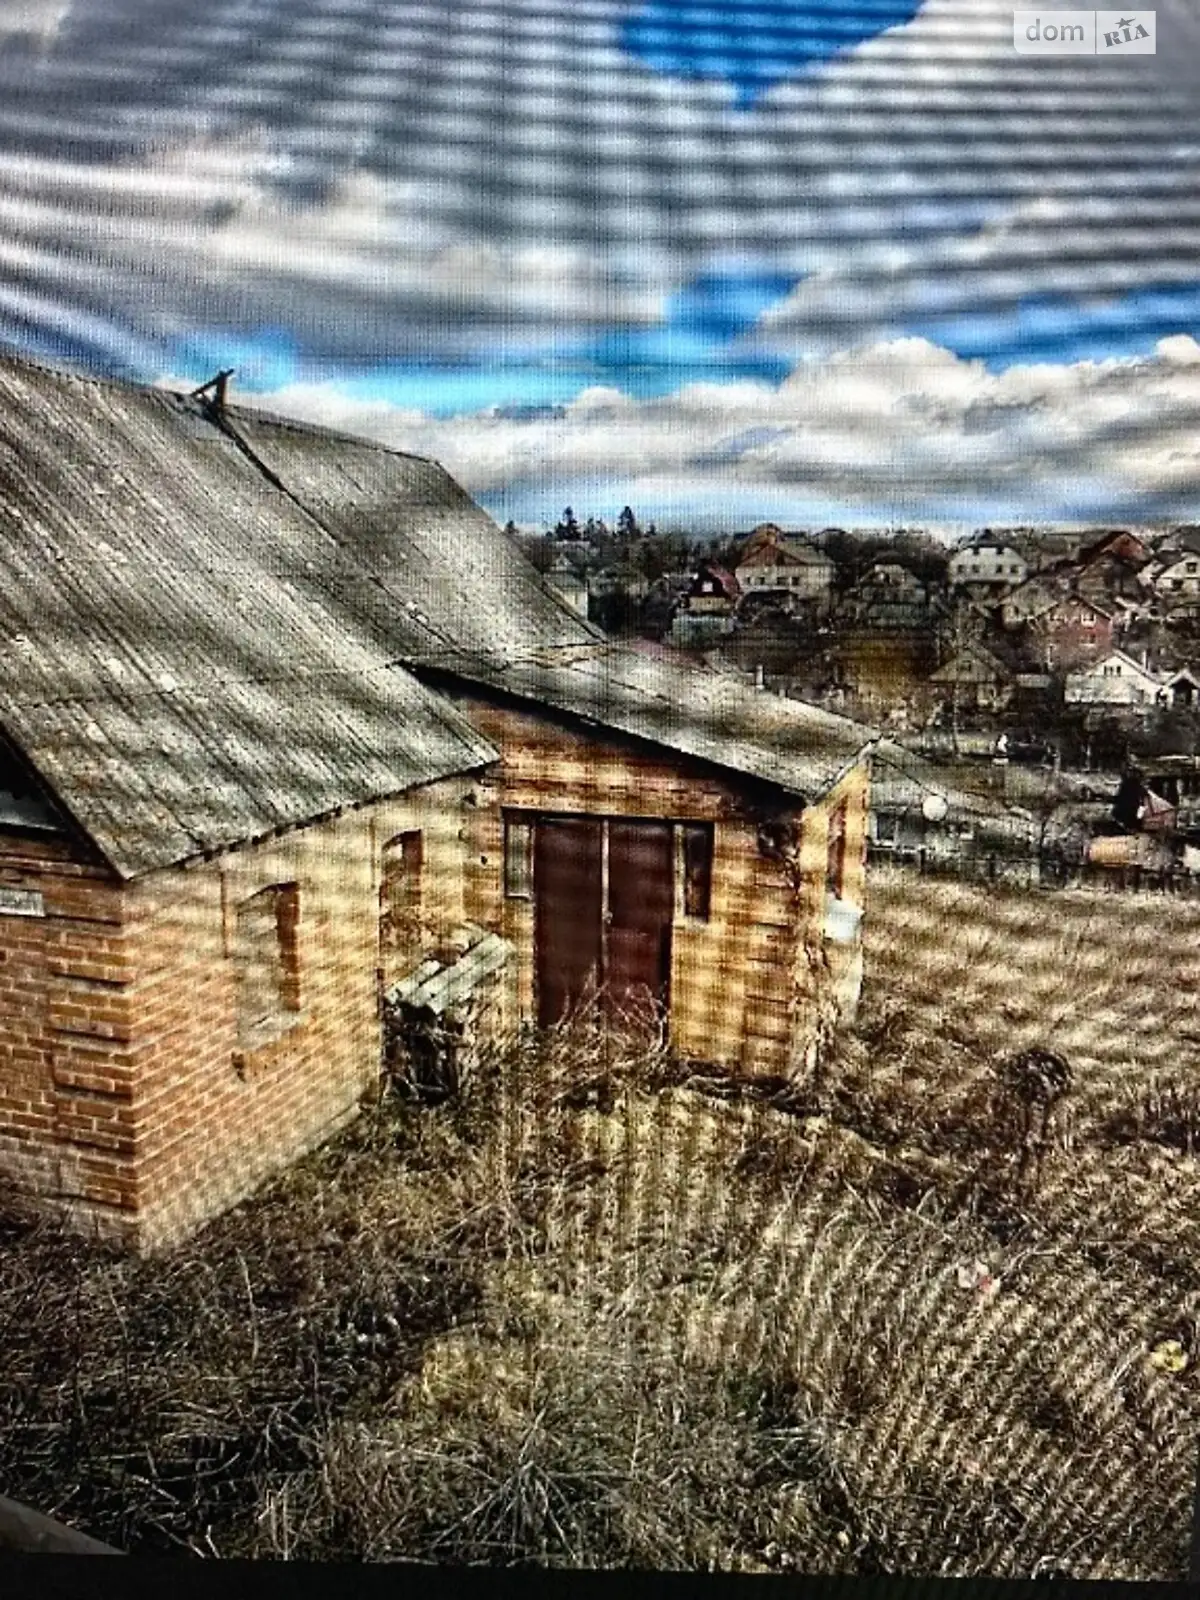 Продается земельный участок 13 соток в Винницкой области - фото 3